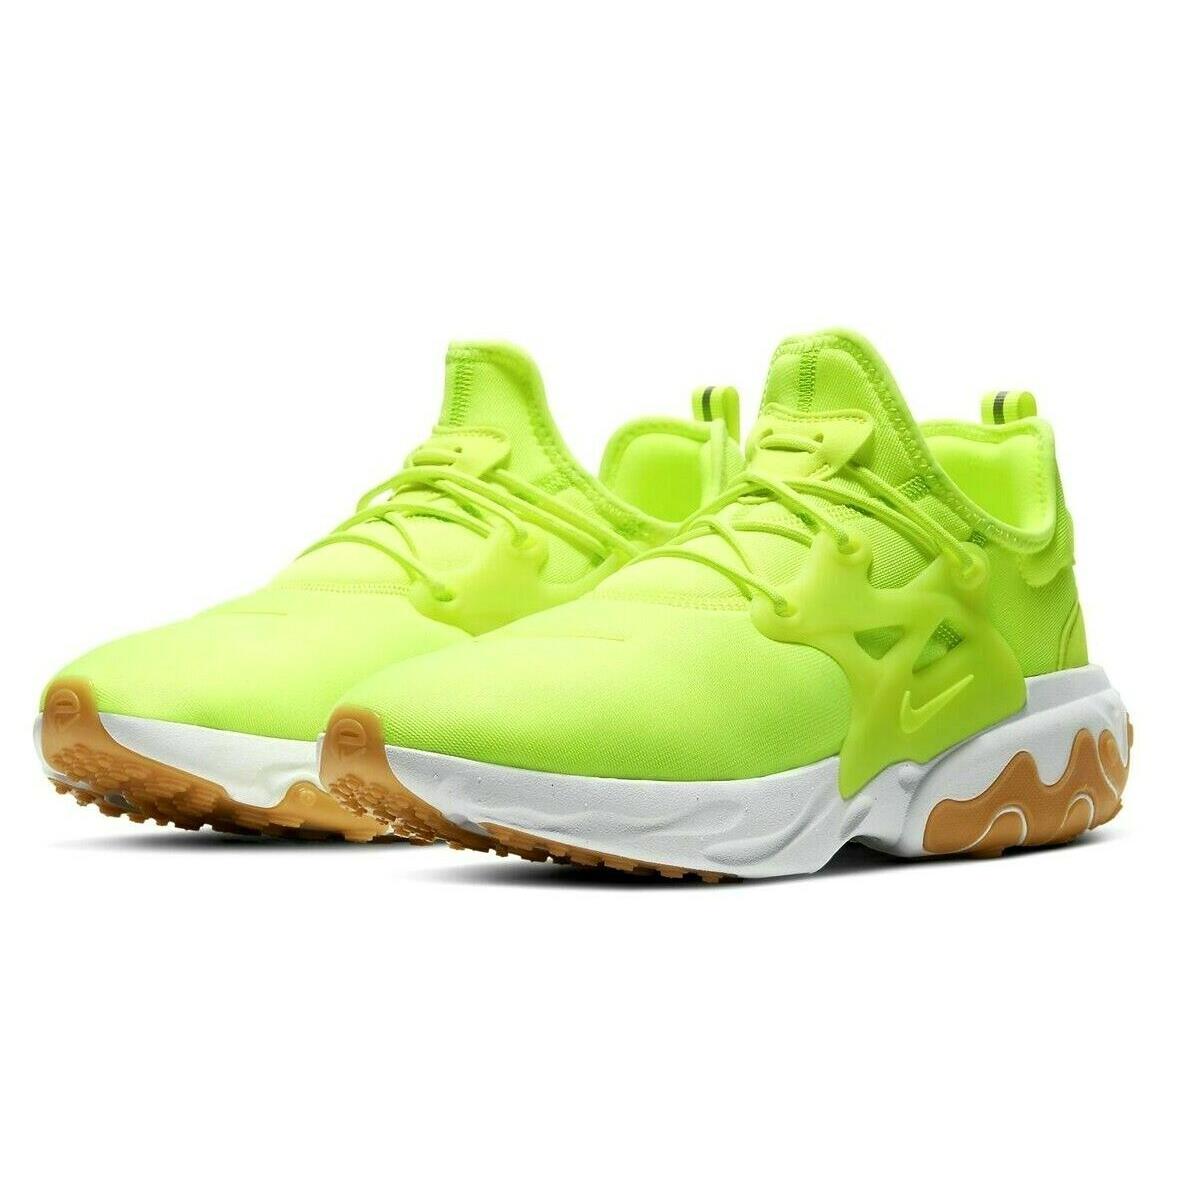 Nike React Presto Mens Size 9 Sneaker Shoes AV2605 702 Volt White Gum